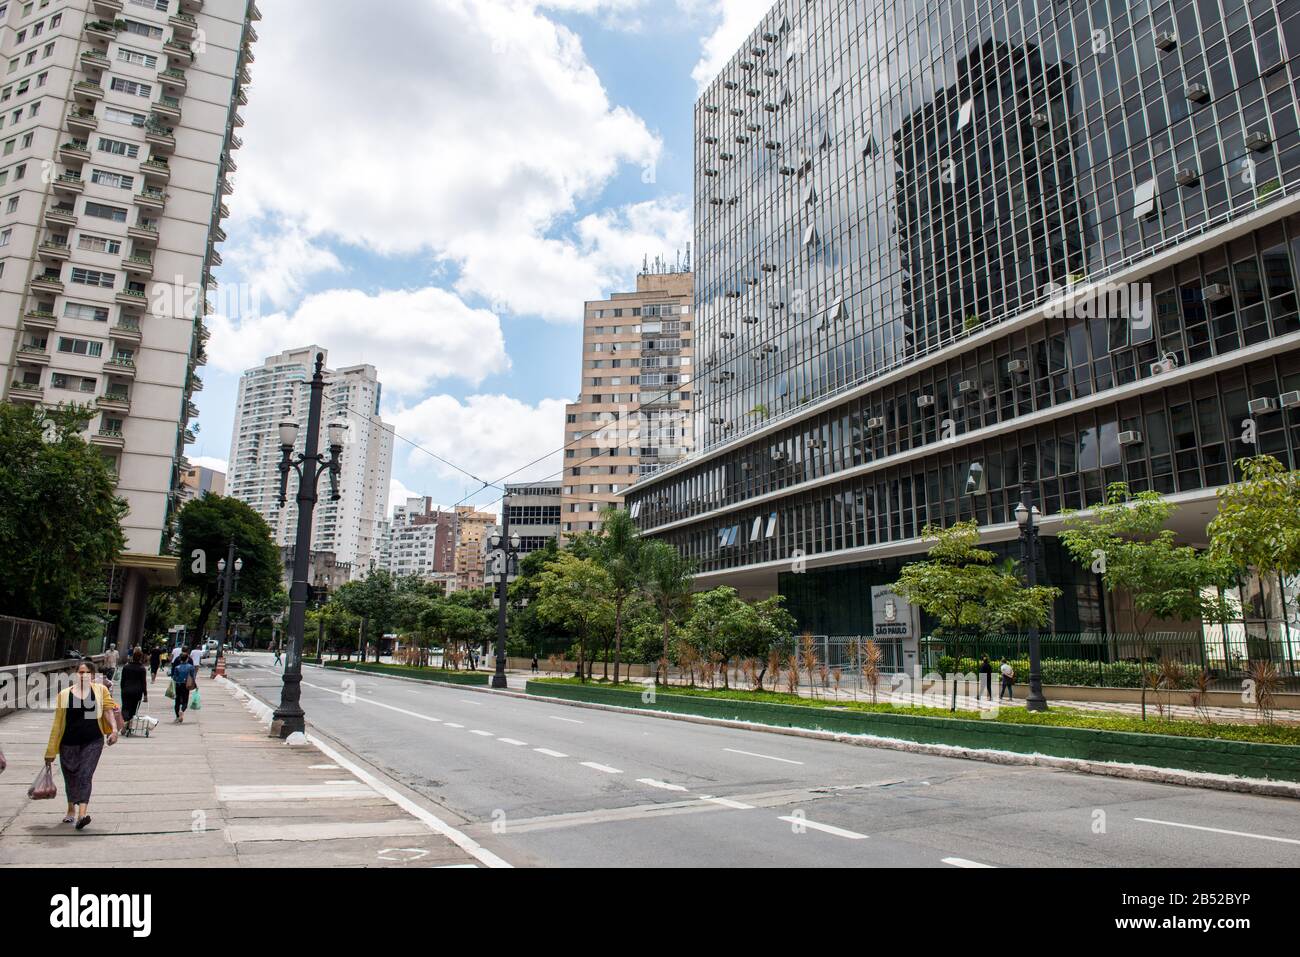 San PAOLO, BRASILE - 01 MARZO, 2020: Immagine orizzontale di grandi strade con vecchi edifici nella città vecchia di San Paolo, Brasile Foto Stock